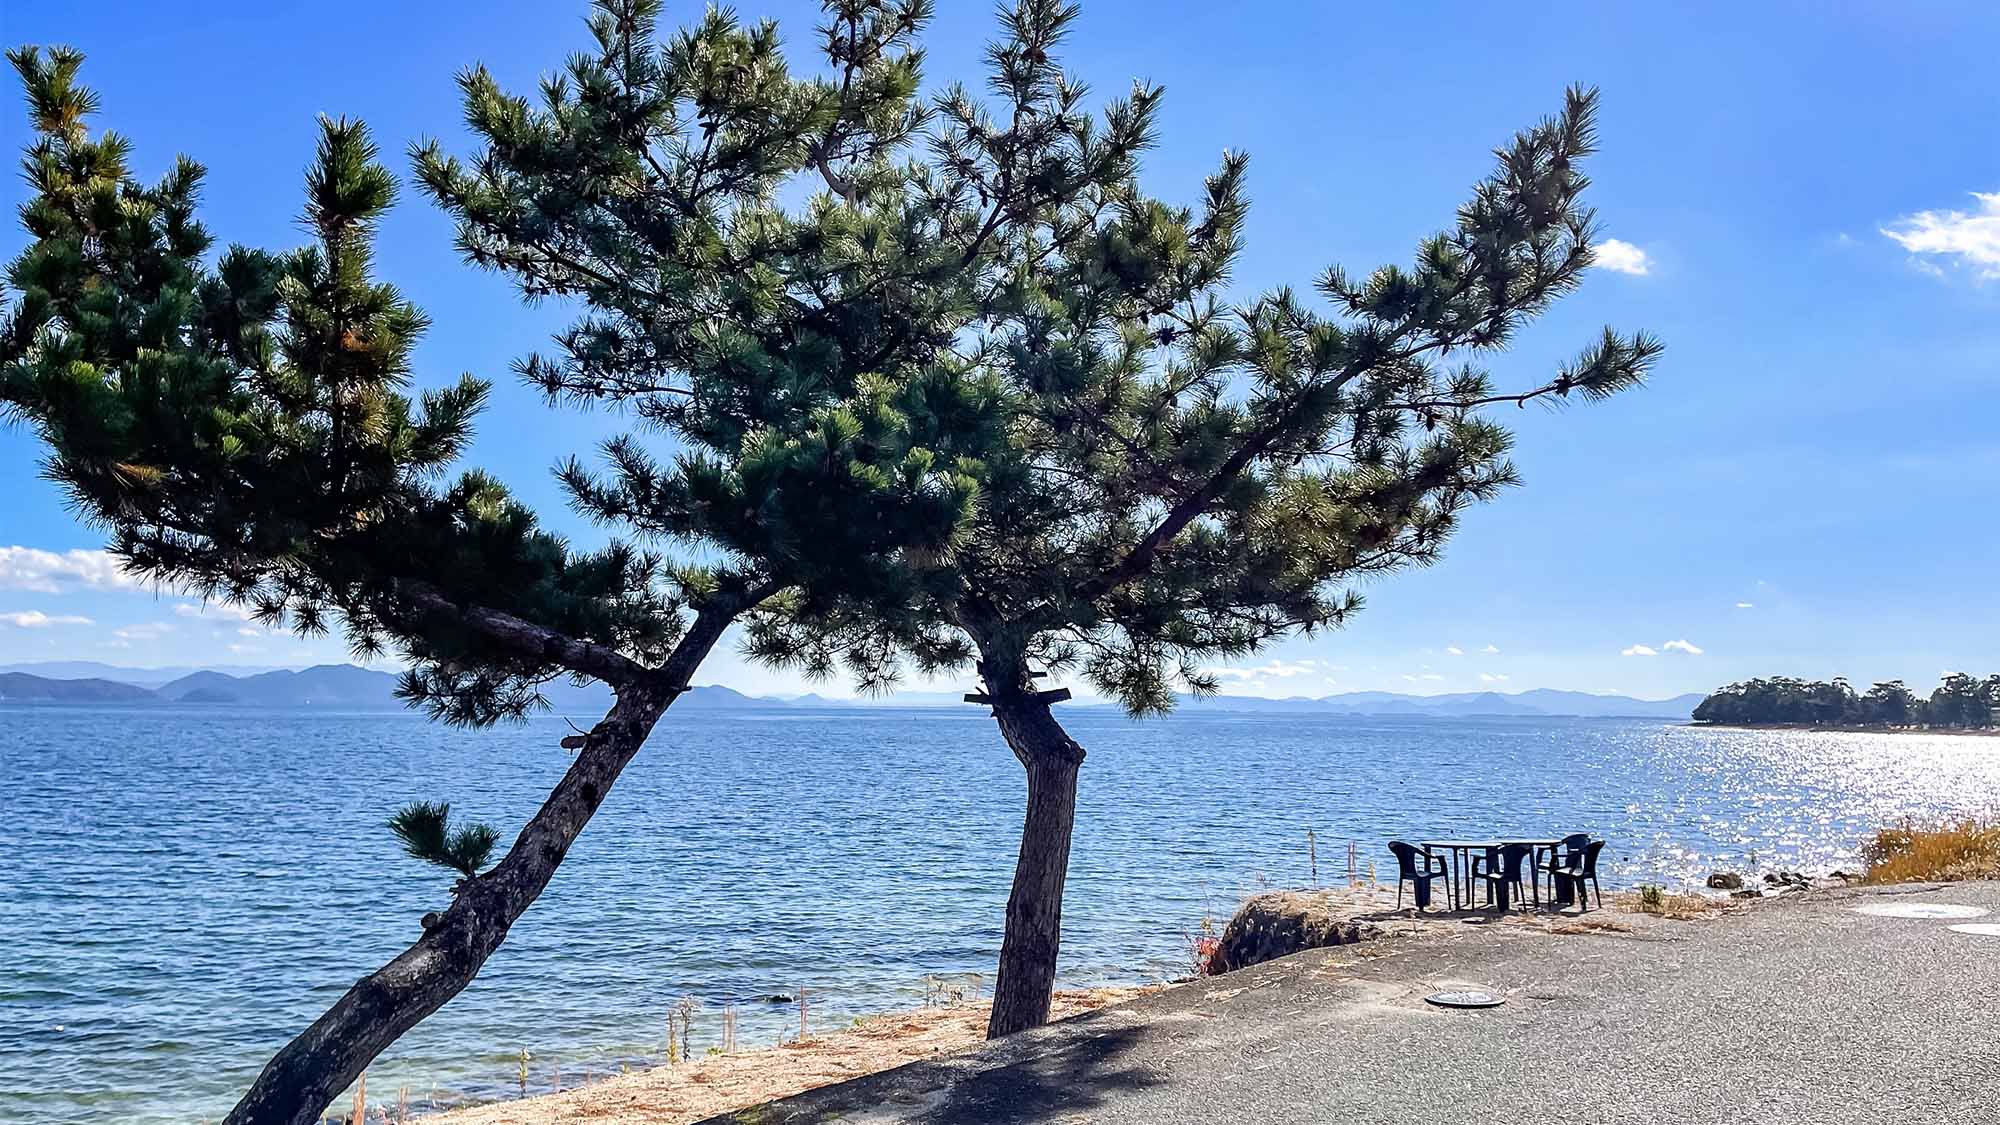 ・琵琶湖とセットで松を眺めると心が癒されます